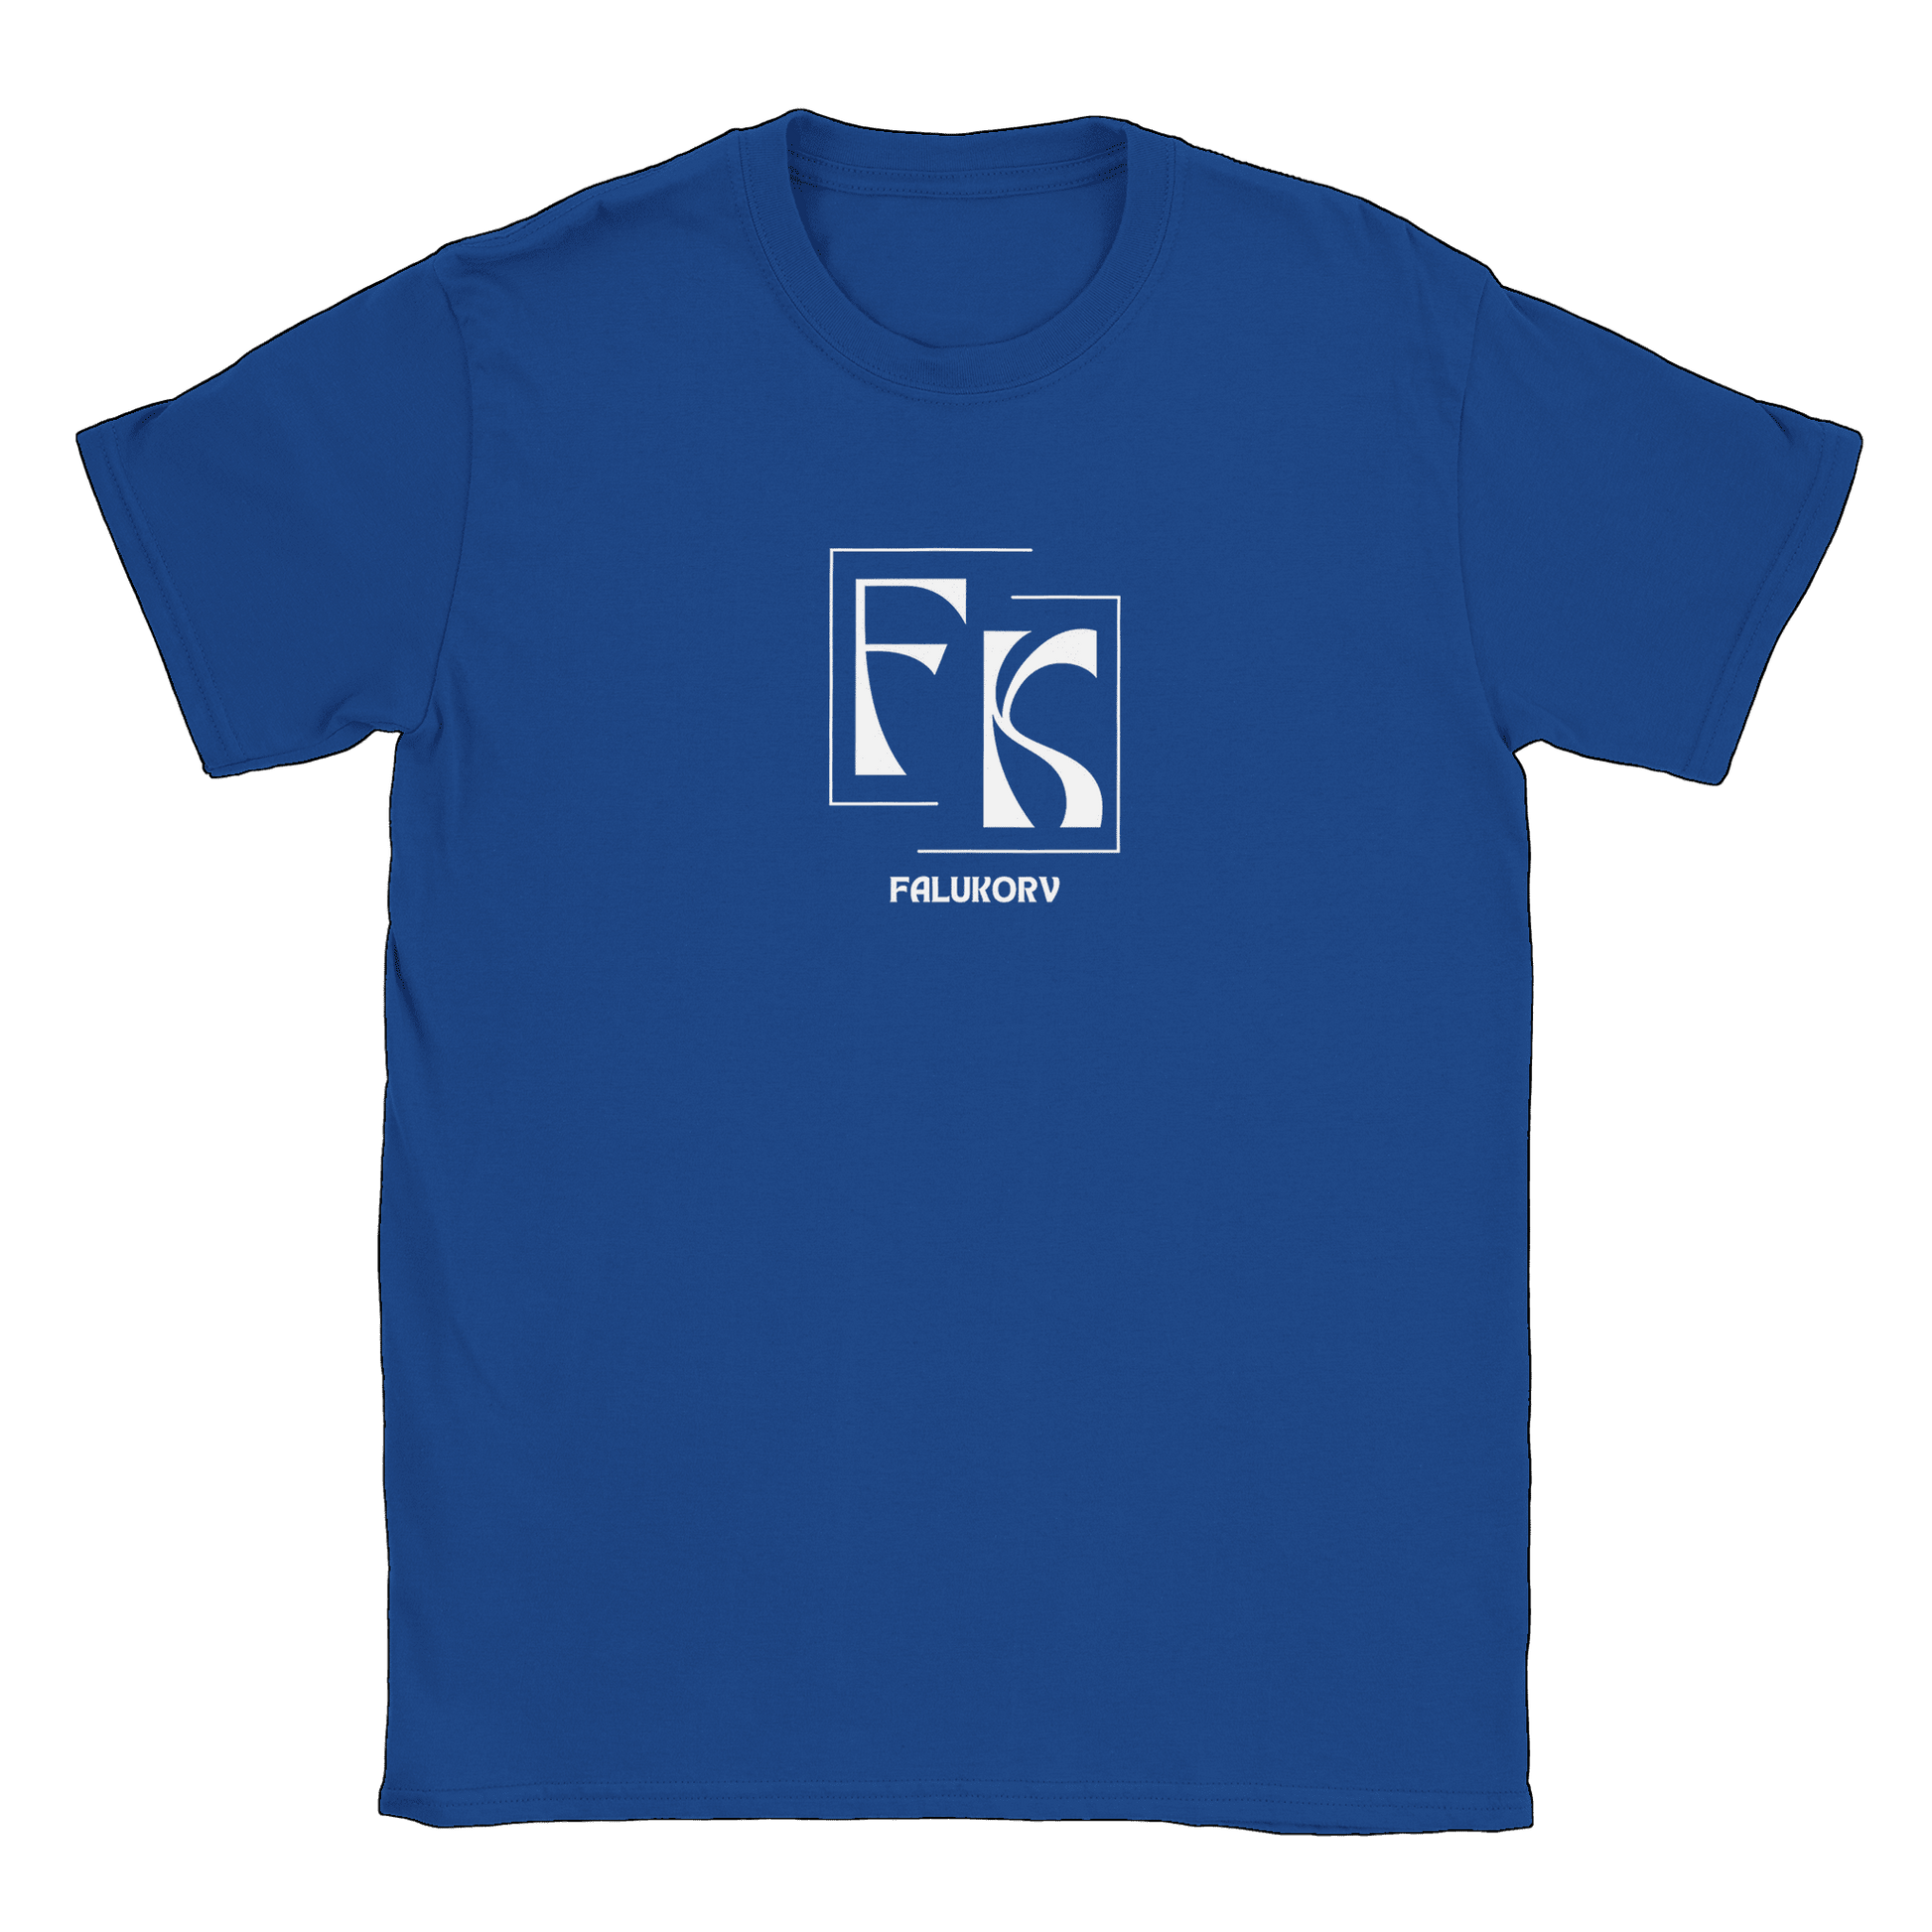 Falukorv - T-shirt Royal